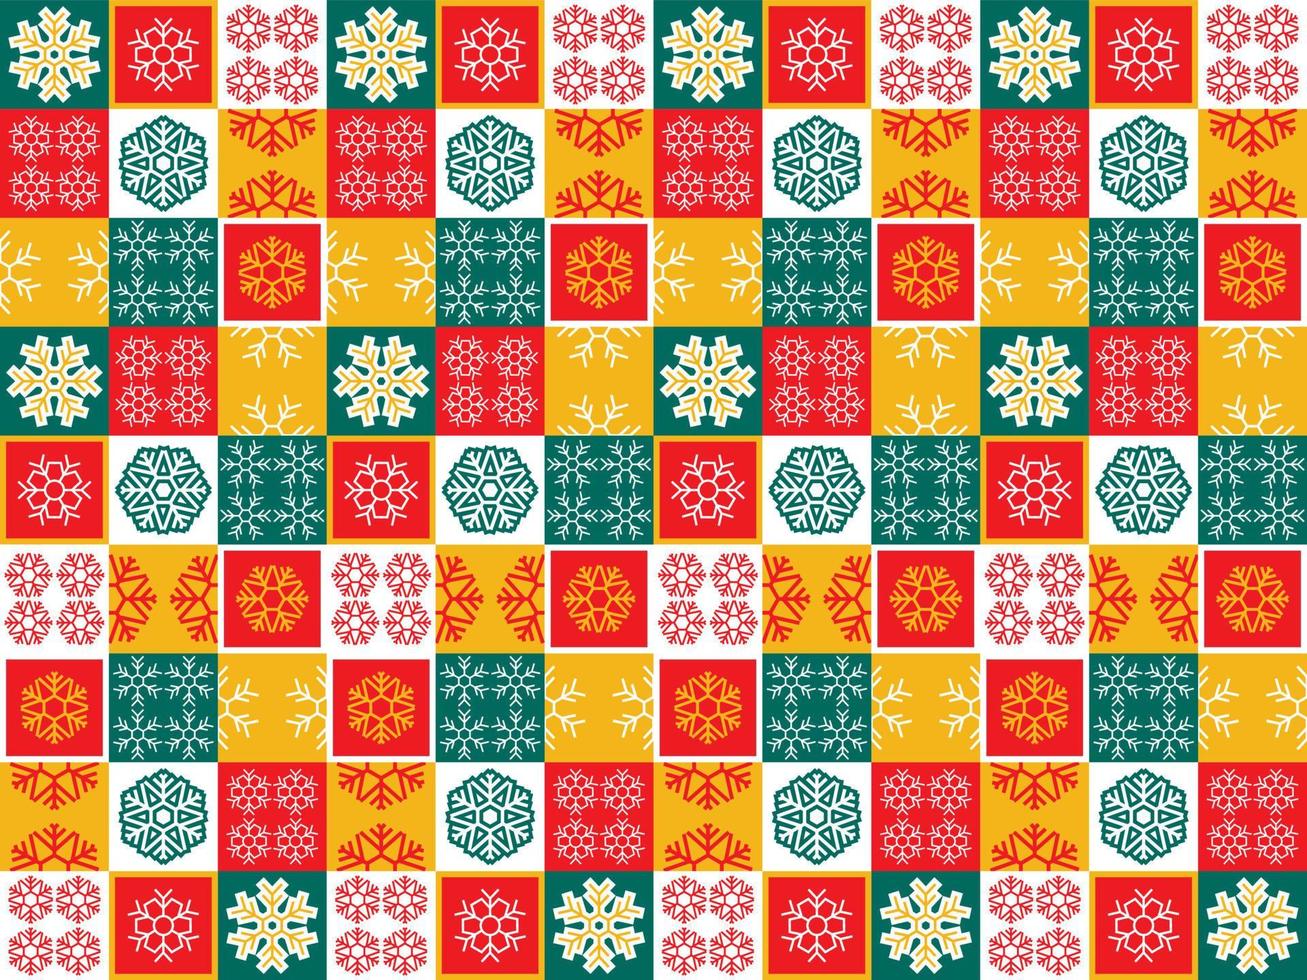 transparente feliz navidad invierno fondo geométrico telón de fondo año nuevo vector plantilla abstracta arte